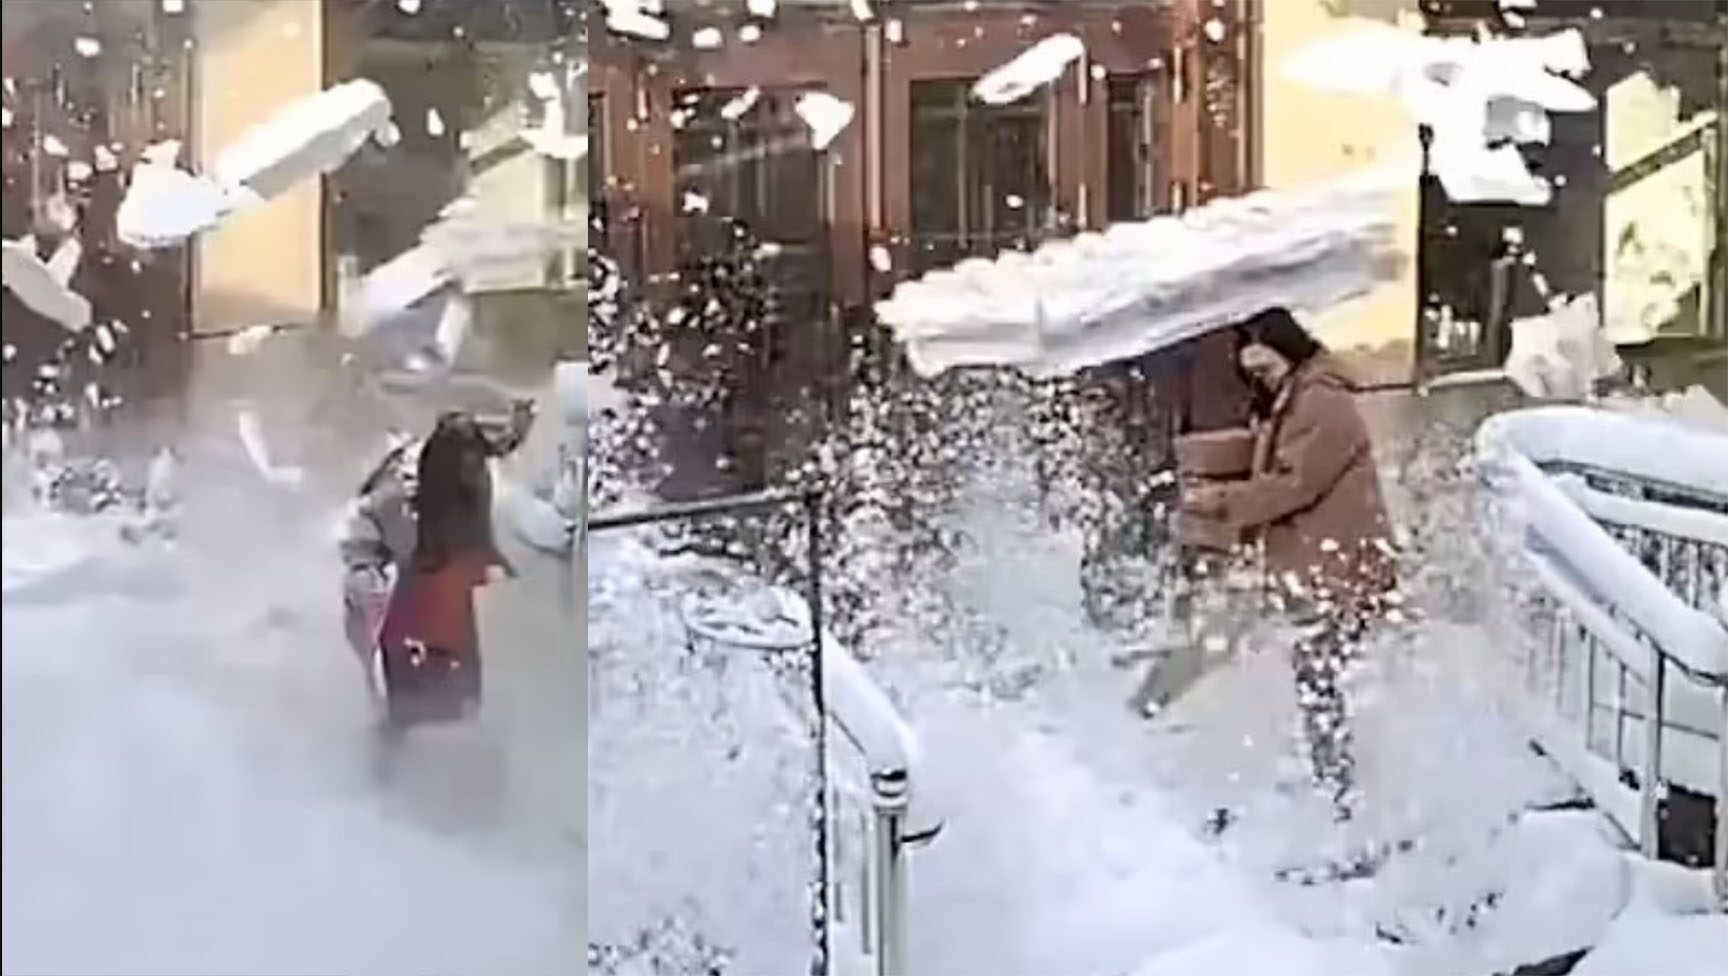 ระทึกแผ่นหิมะร่วงใส่สาว คลิปไวรัล จีนหนาวยะเยือกทั่วภาคเหนือ